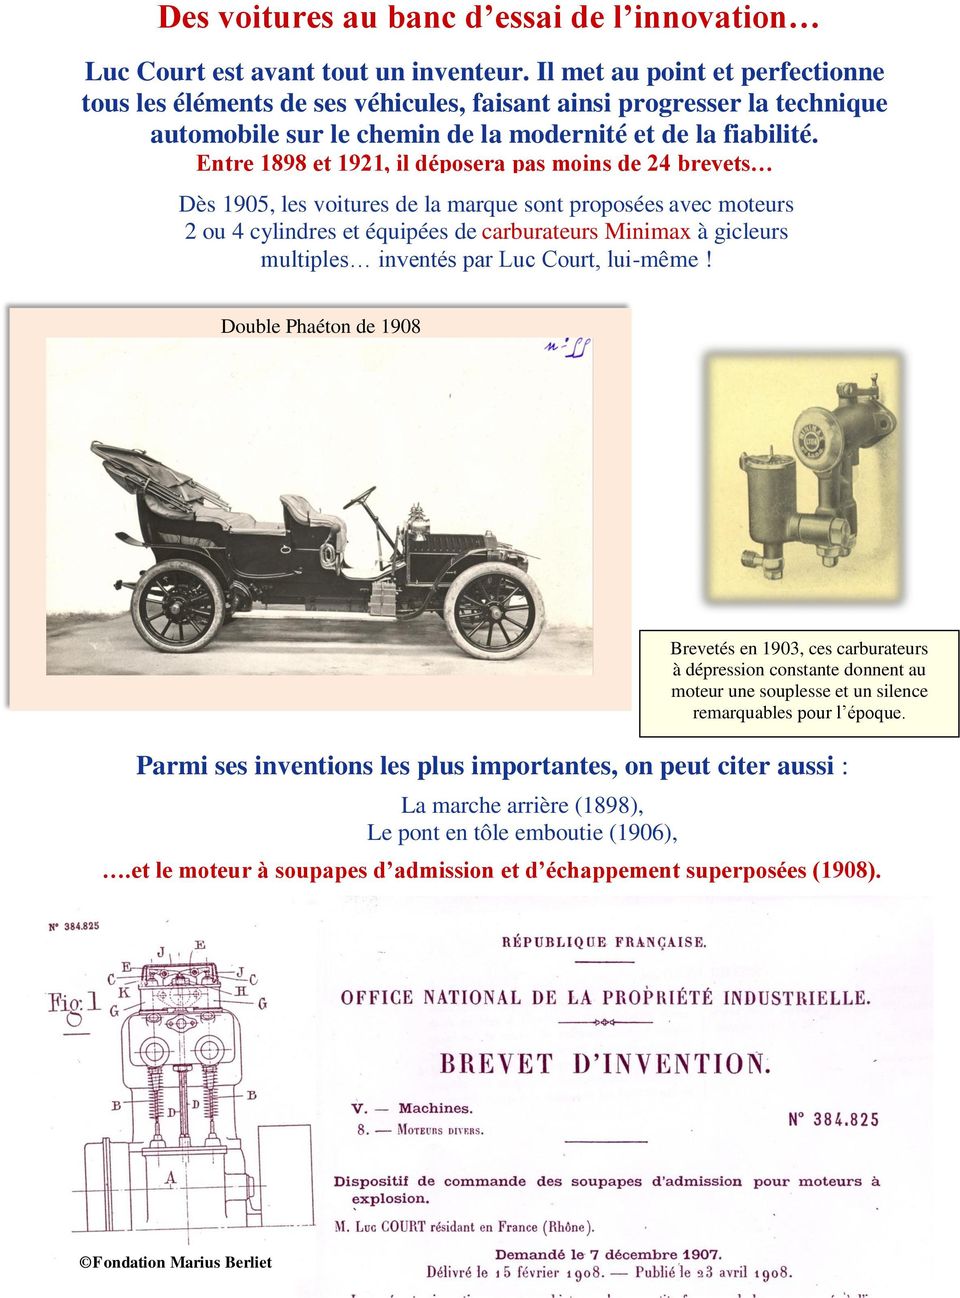 Entre 1898 et 1921, il déposera pas moins de 24 brevets Dès 1905, les voitures de la marque sont proposées avec moteurs 2 ou 4 cylindres et équipées de carburateurs Minimax à gicleurs multiples